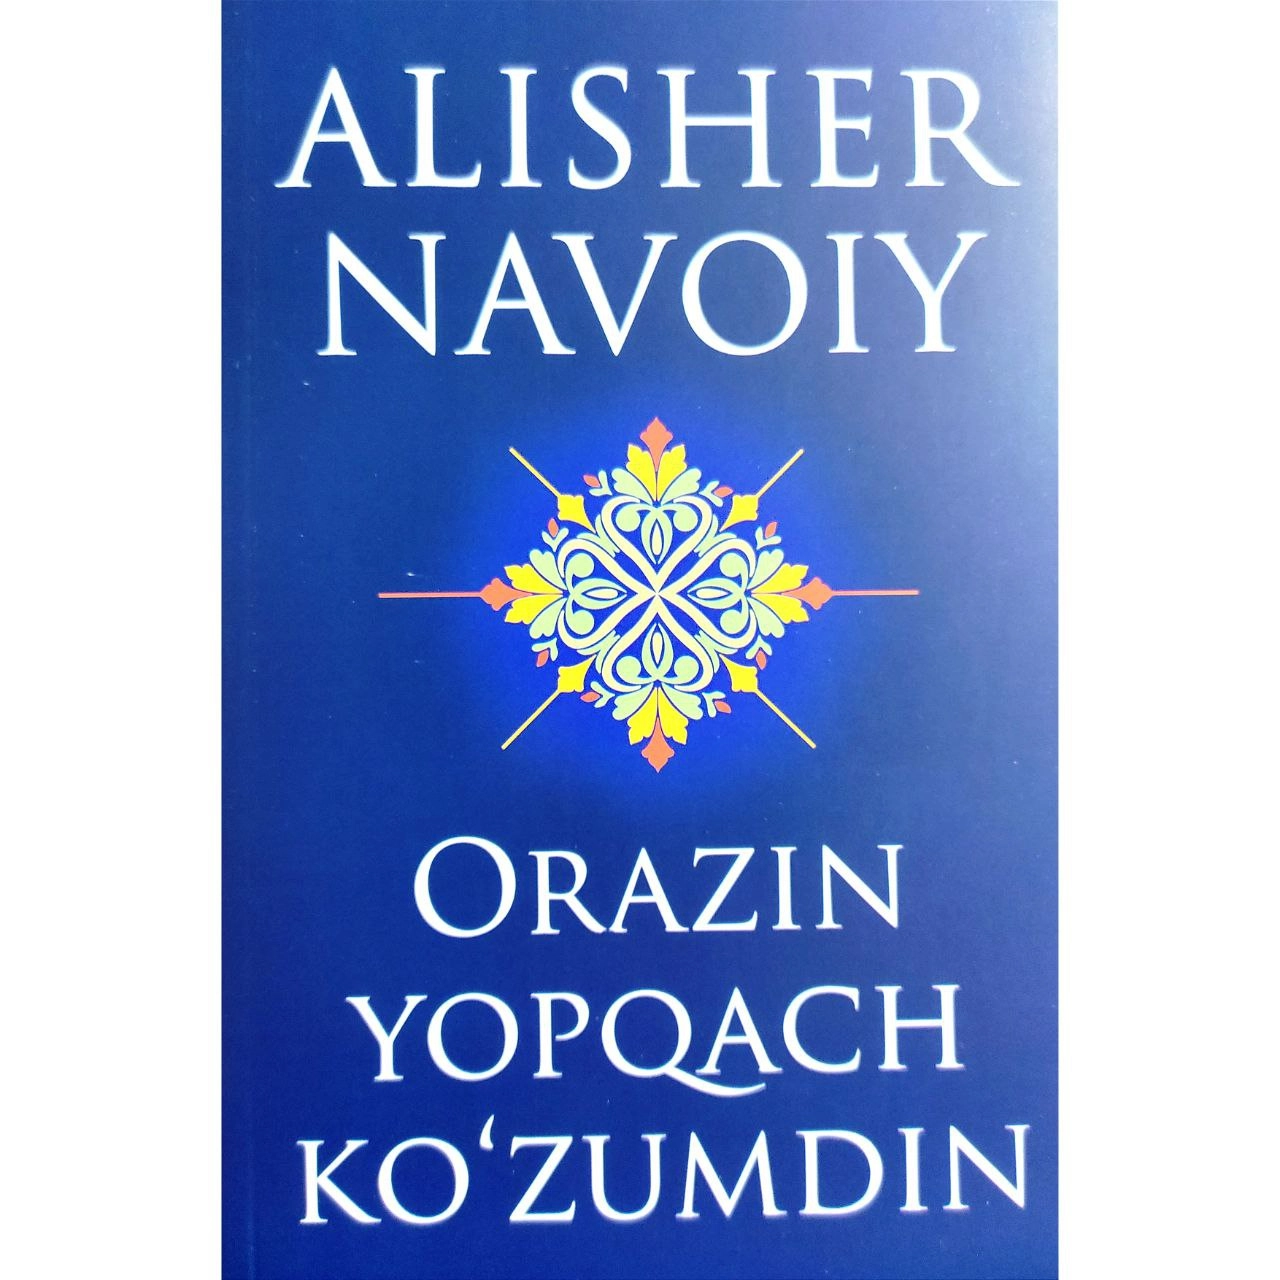 Узбекская литература. Художественная литература. В Узбекистане. ORAZIN YOPQACH Alisher Navoiy. Забаржад Медиа. Uzbek Literature.